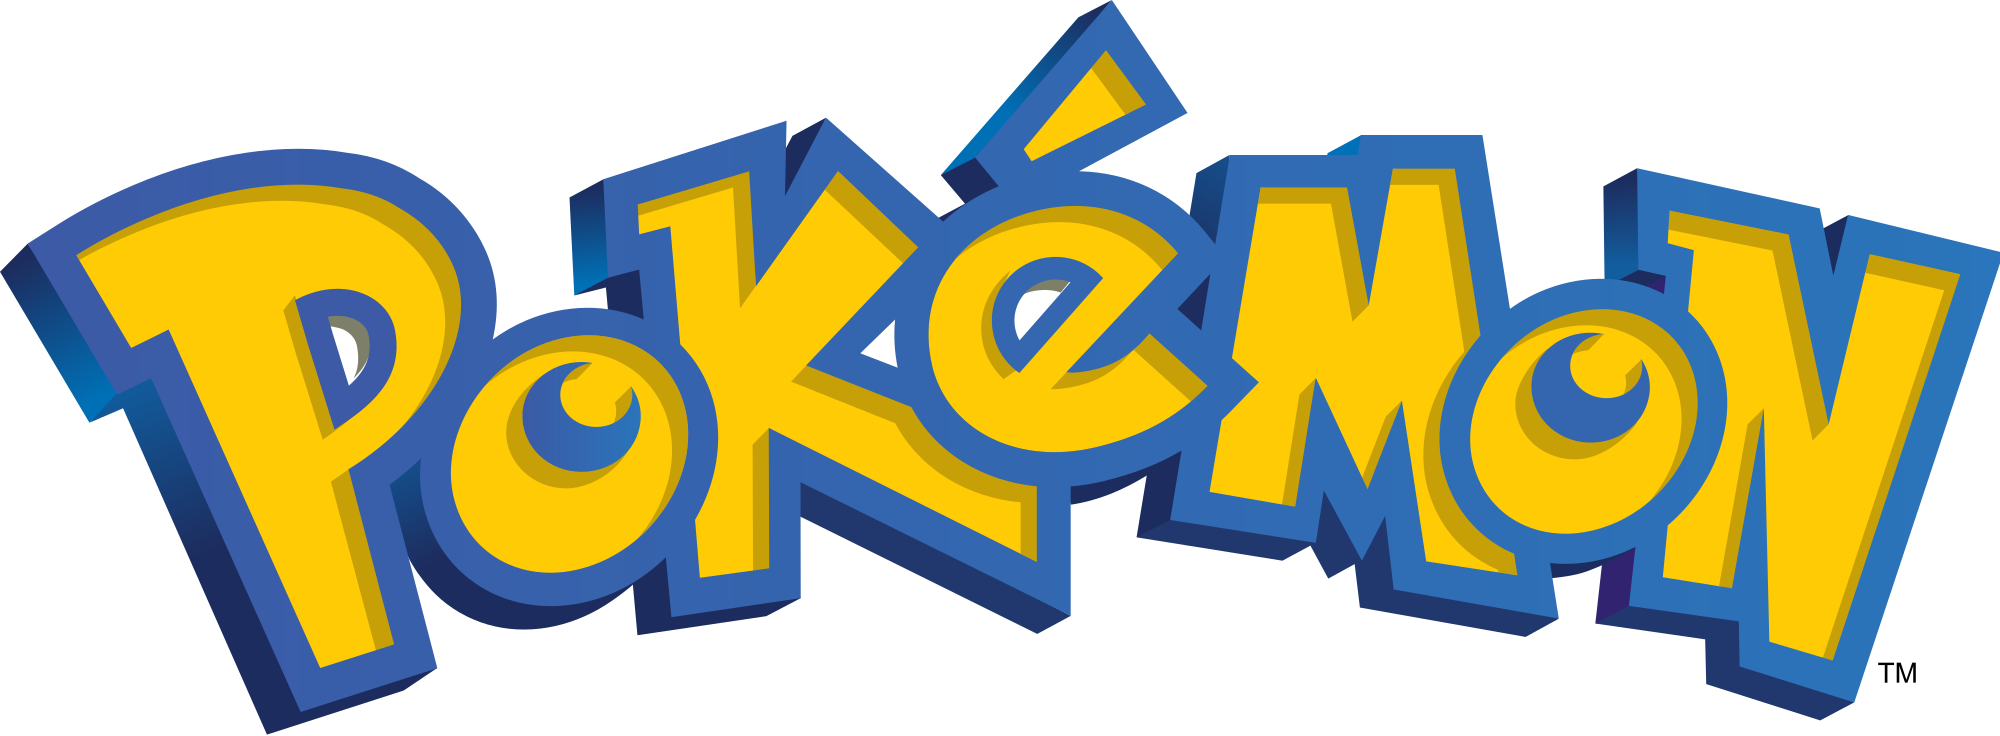 Pokemon Logo Png - Pokemon, Transparent background PNG HD thumbnail